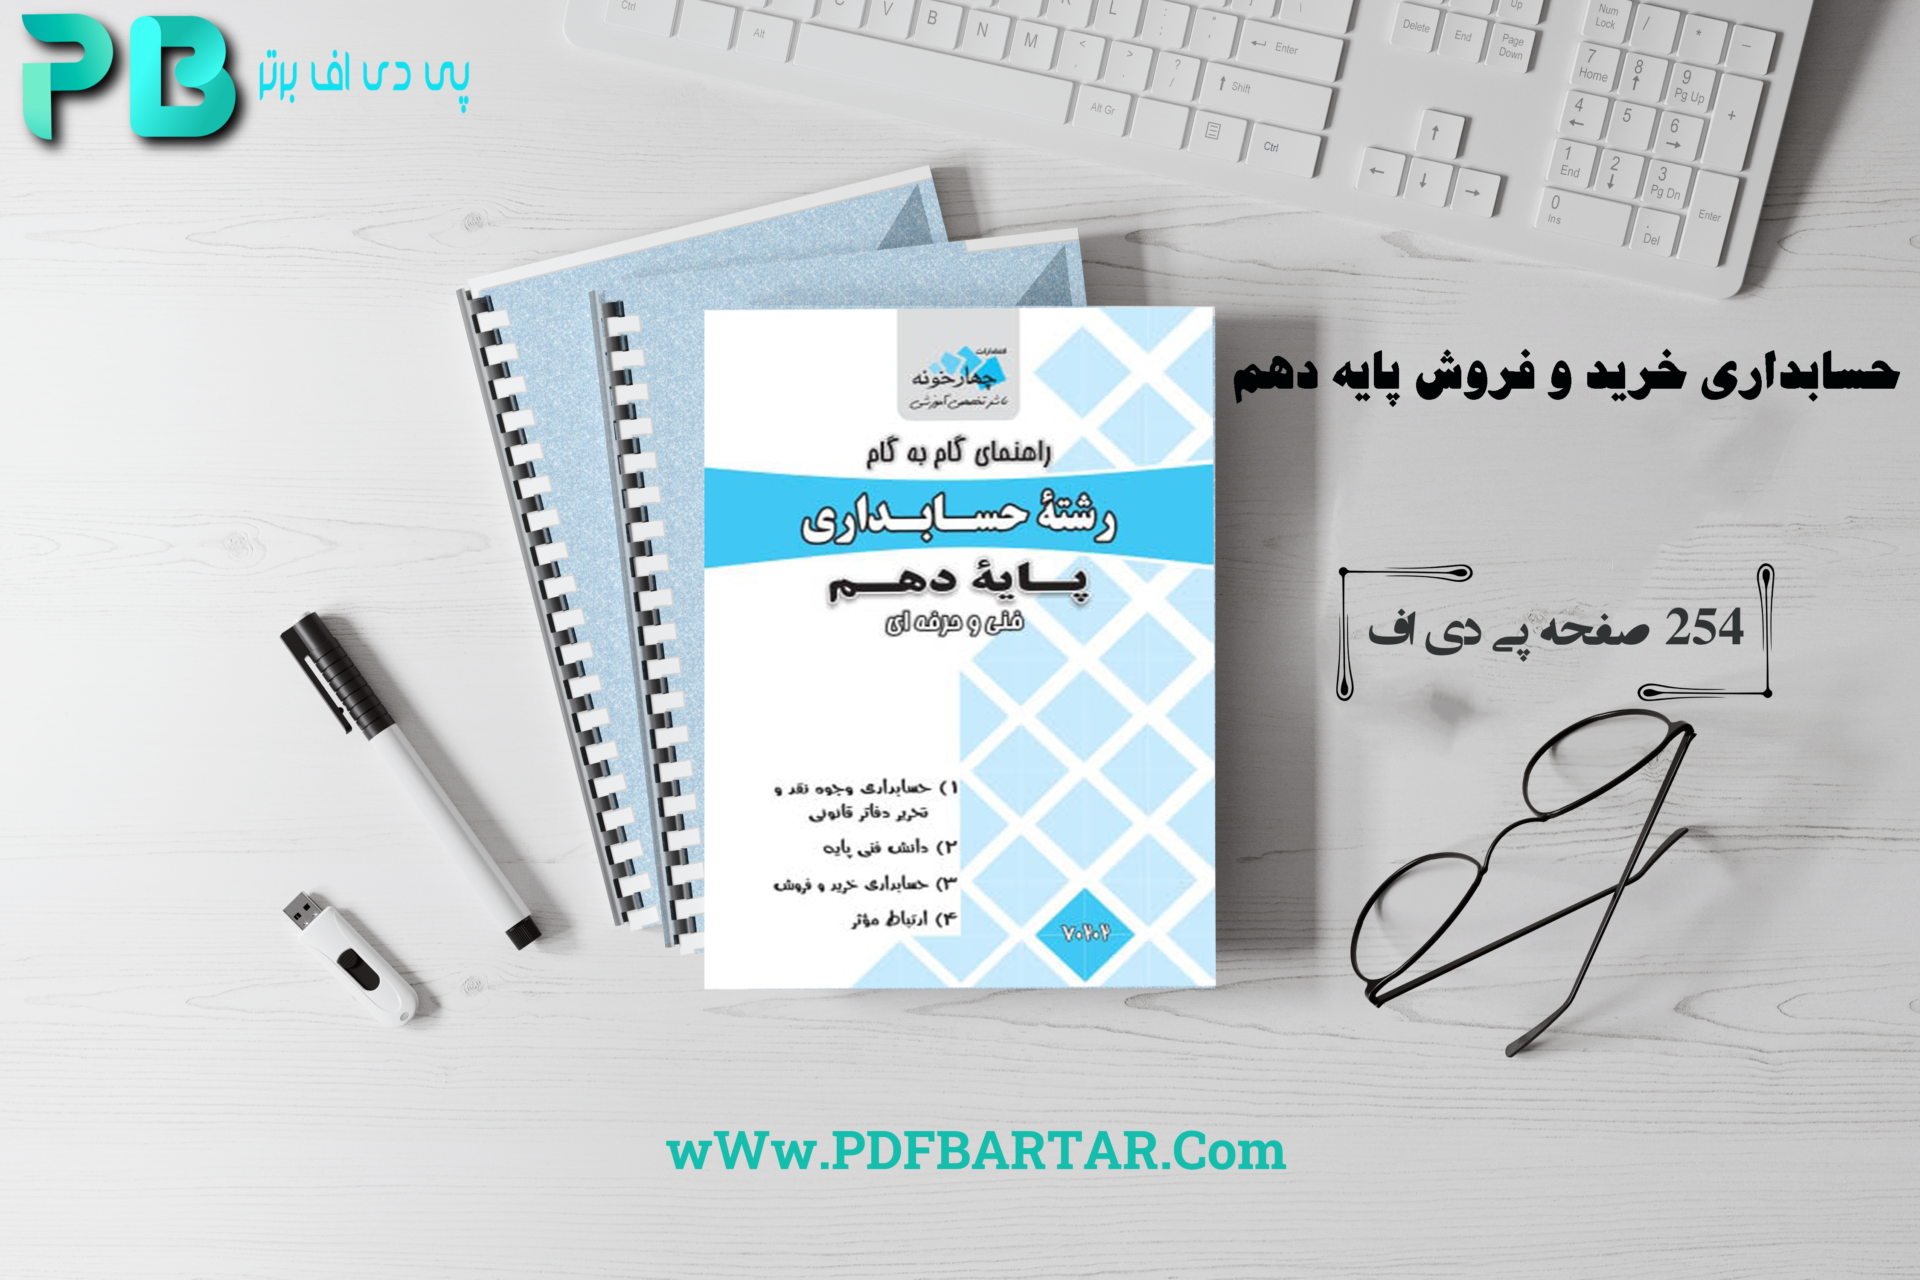 دانلود پی دی اف کتاب حسابداری خرید و فروش پایه دهم PDF - پی دی اف برتر